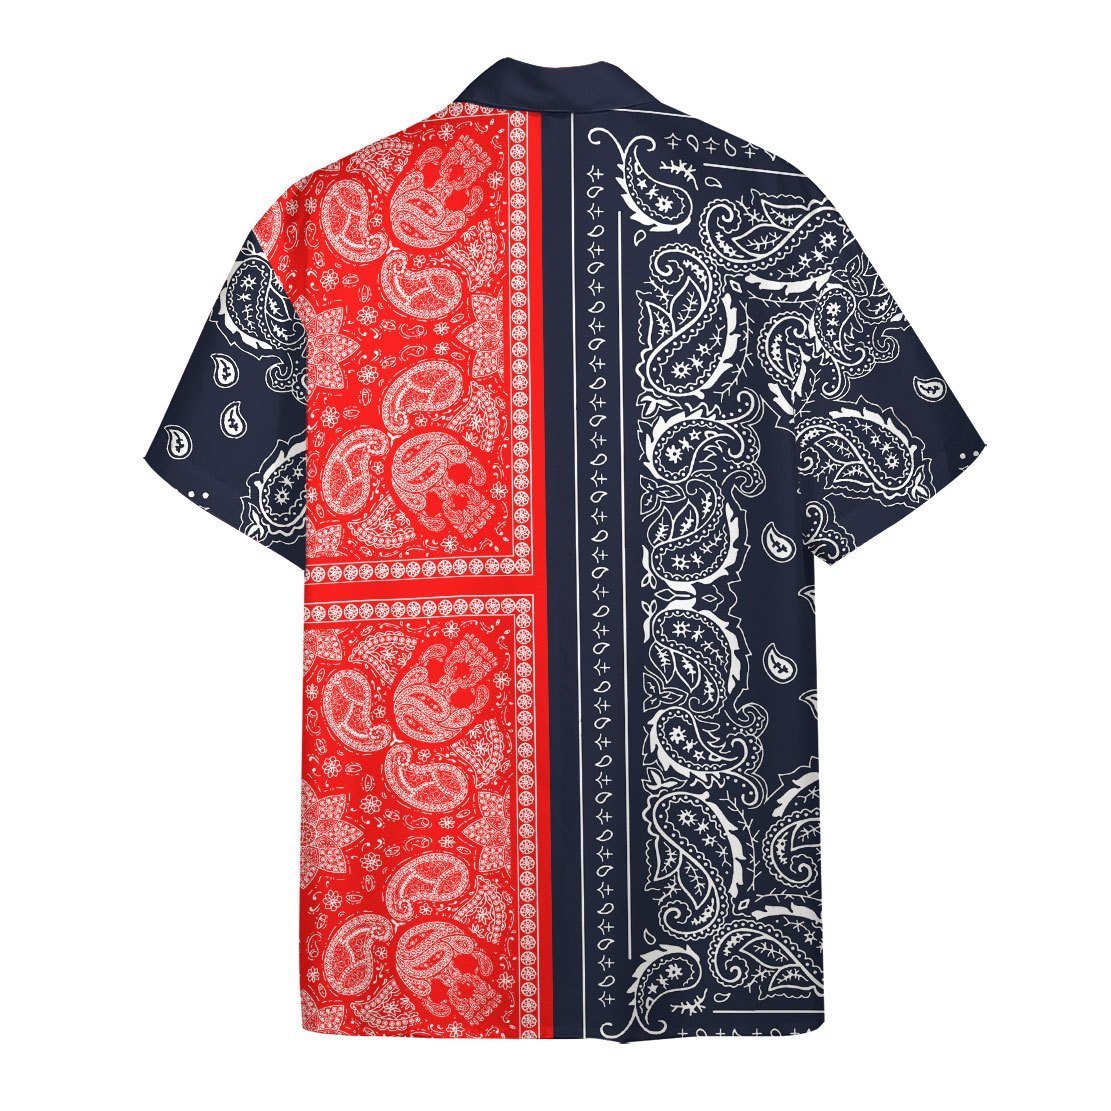 Two Paisley Bandanas Hawaii Shirt